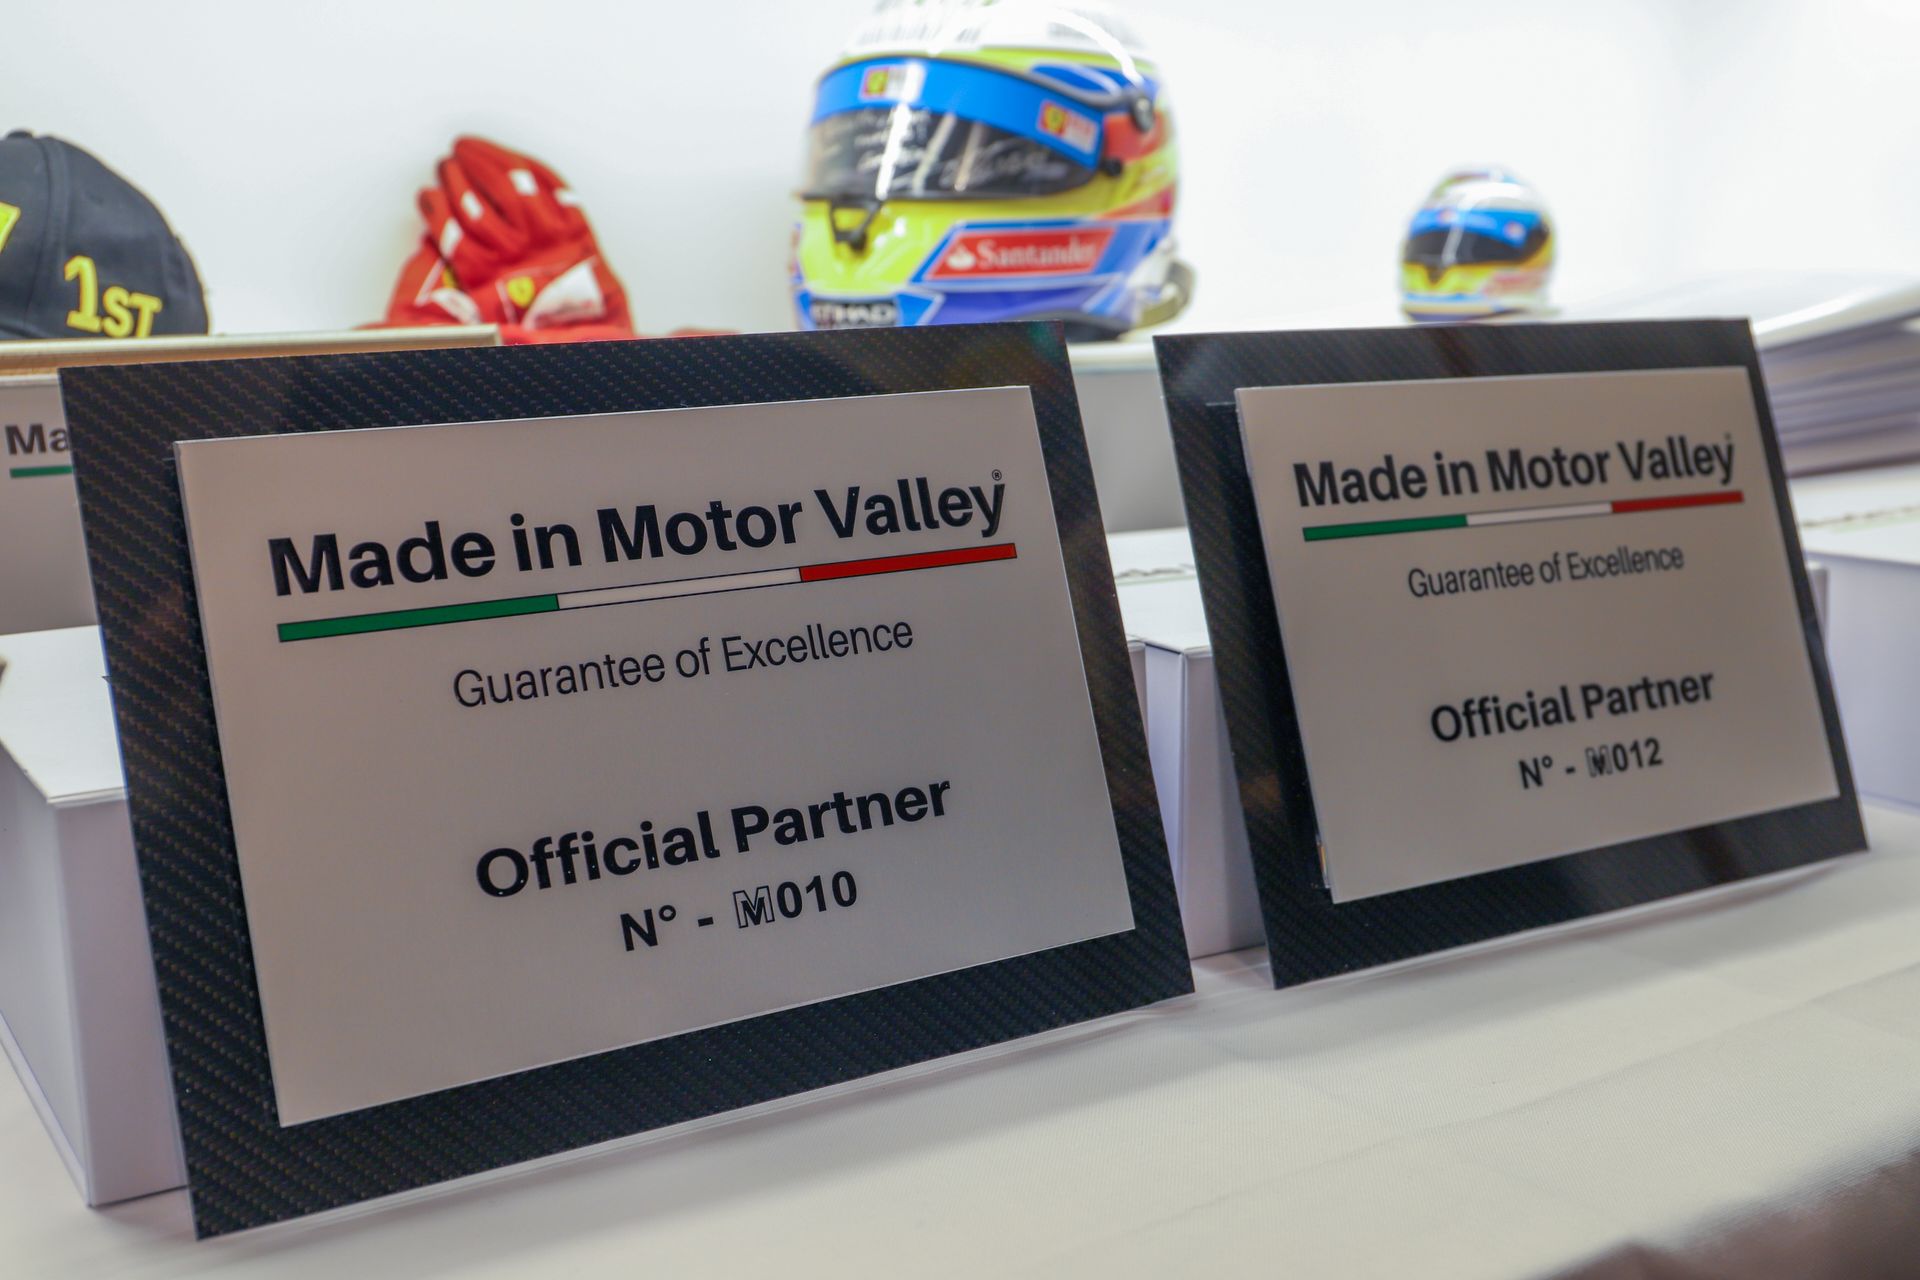 Một số biển số đầu tiên của các hãng tham gia dự án "Made in Motor Valley"